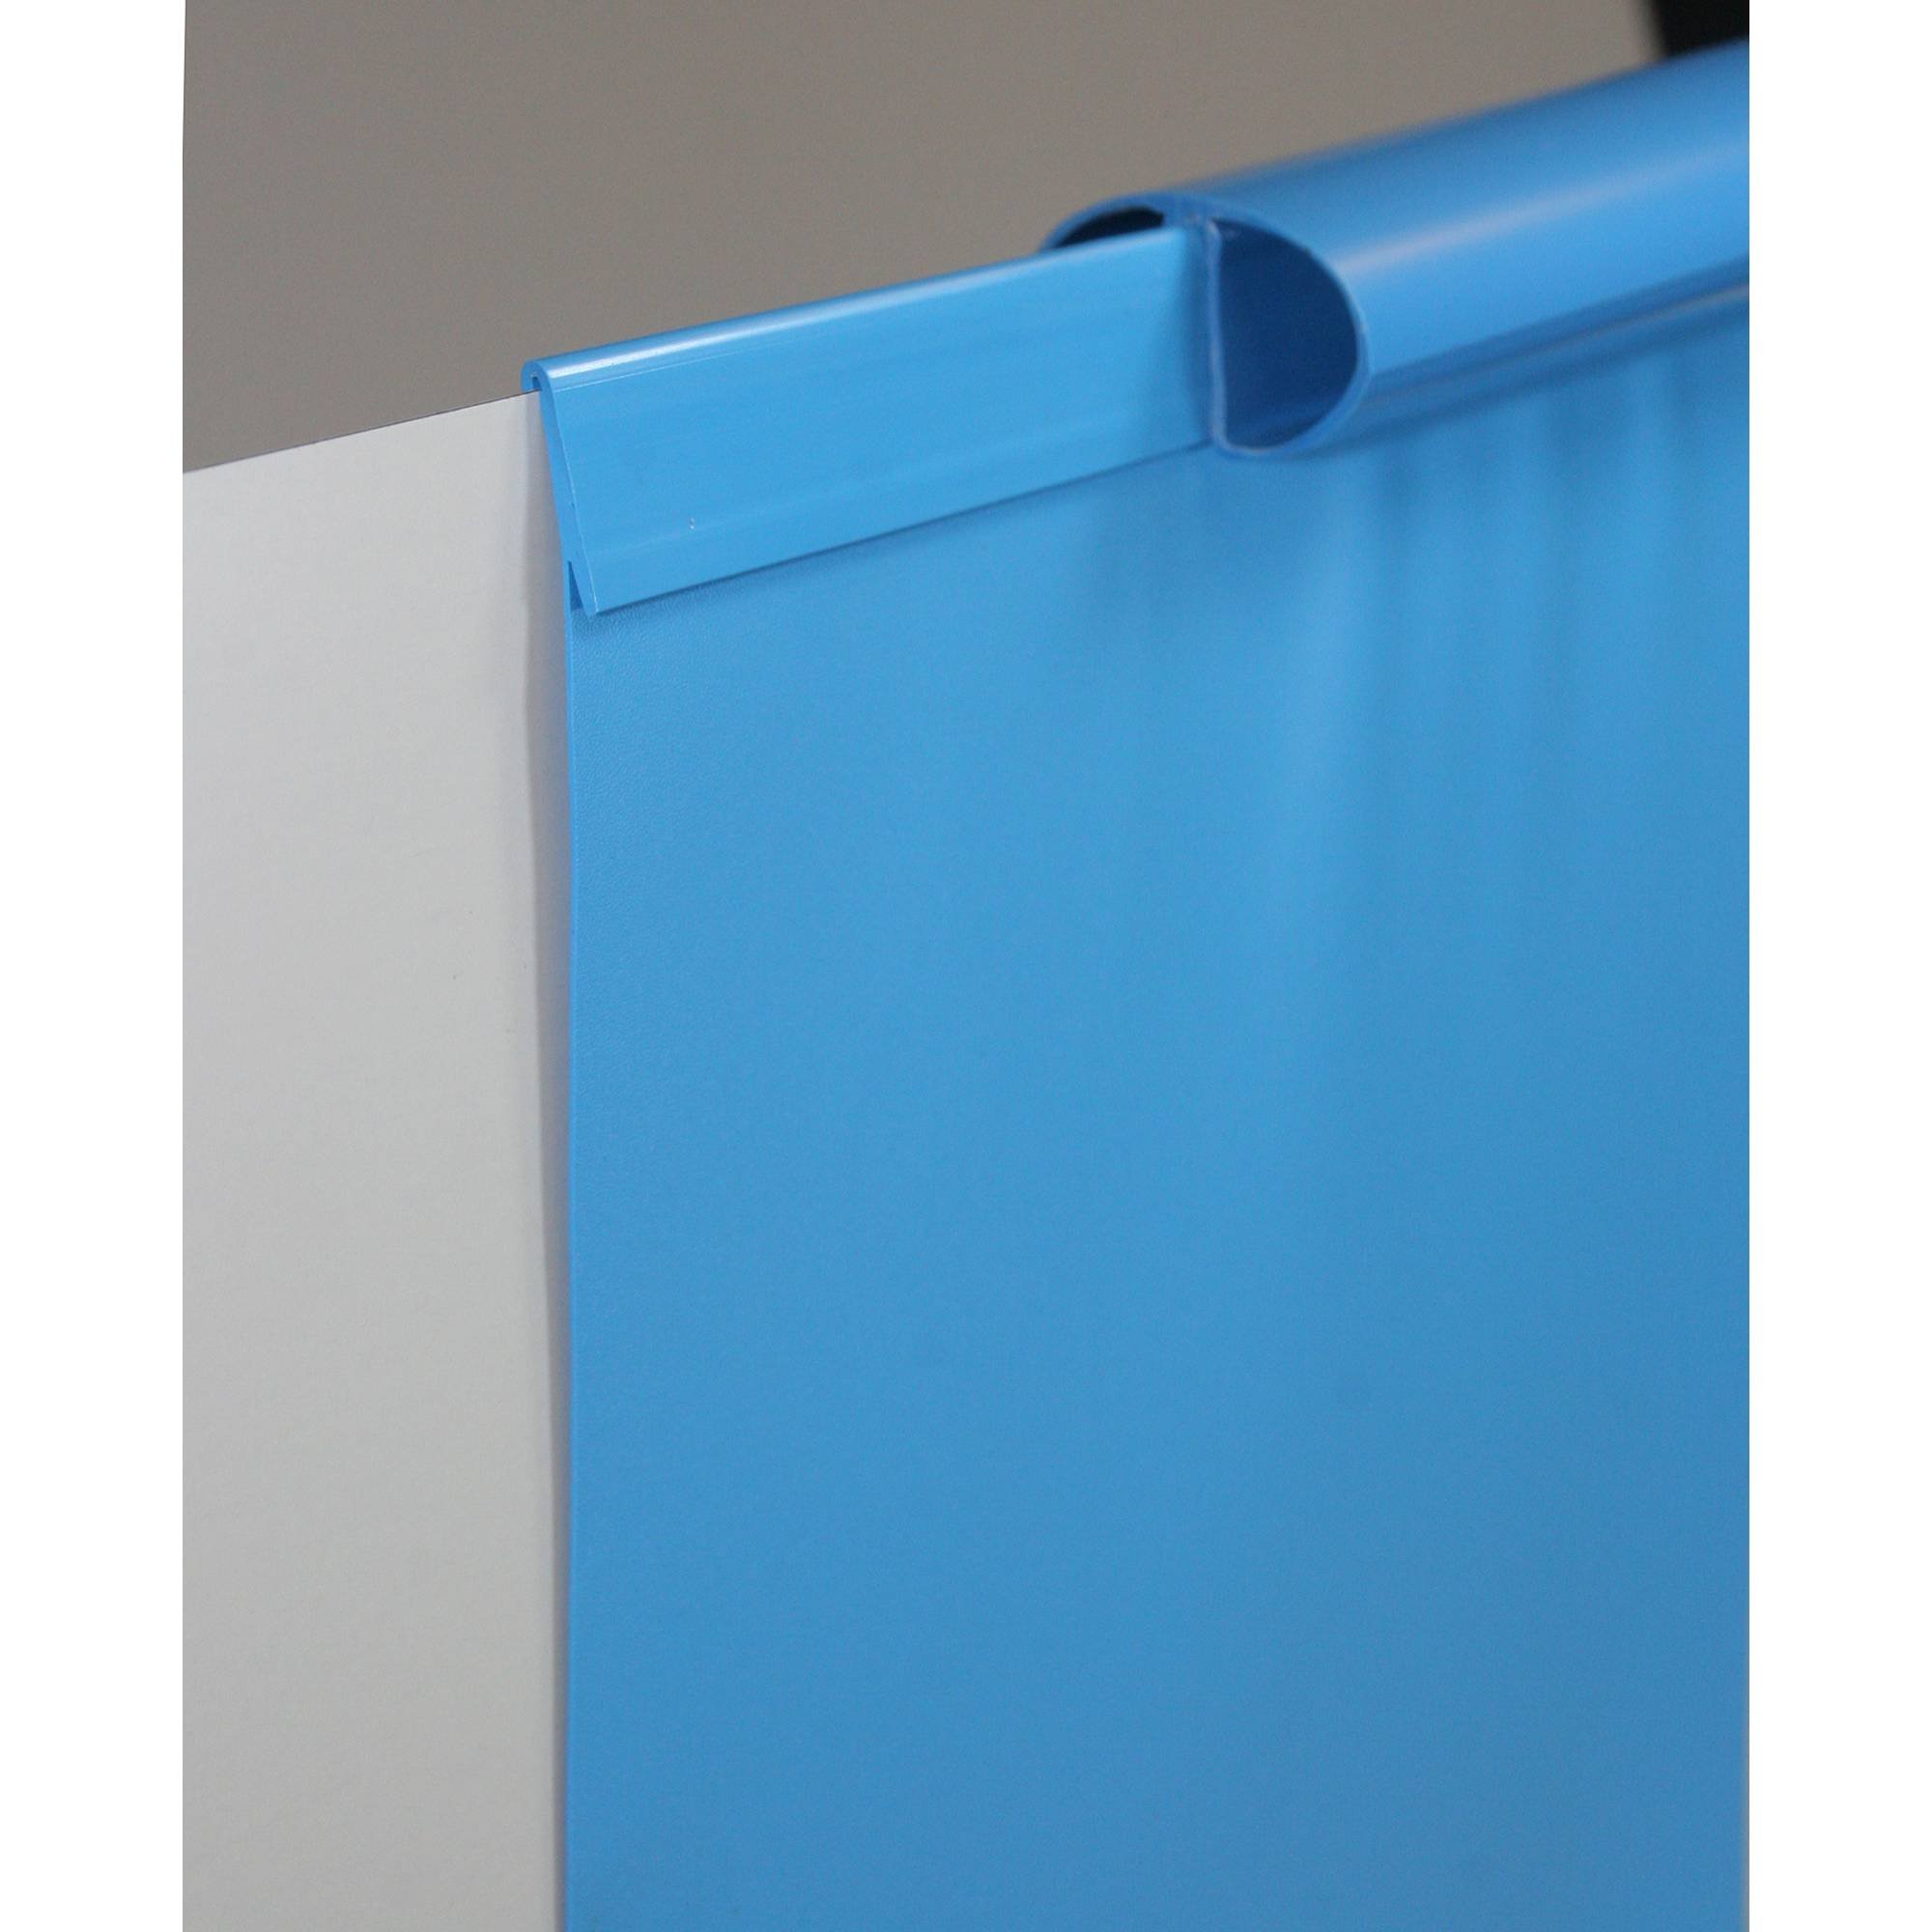 Poolfolie Ersatzfolie Rundbecken 550x120cm - Dicke 0,6mm - Einhängebiese - blau